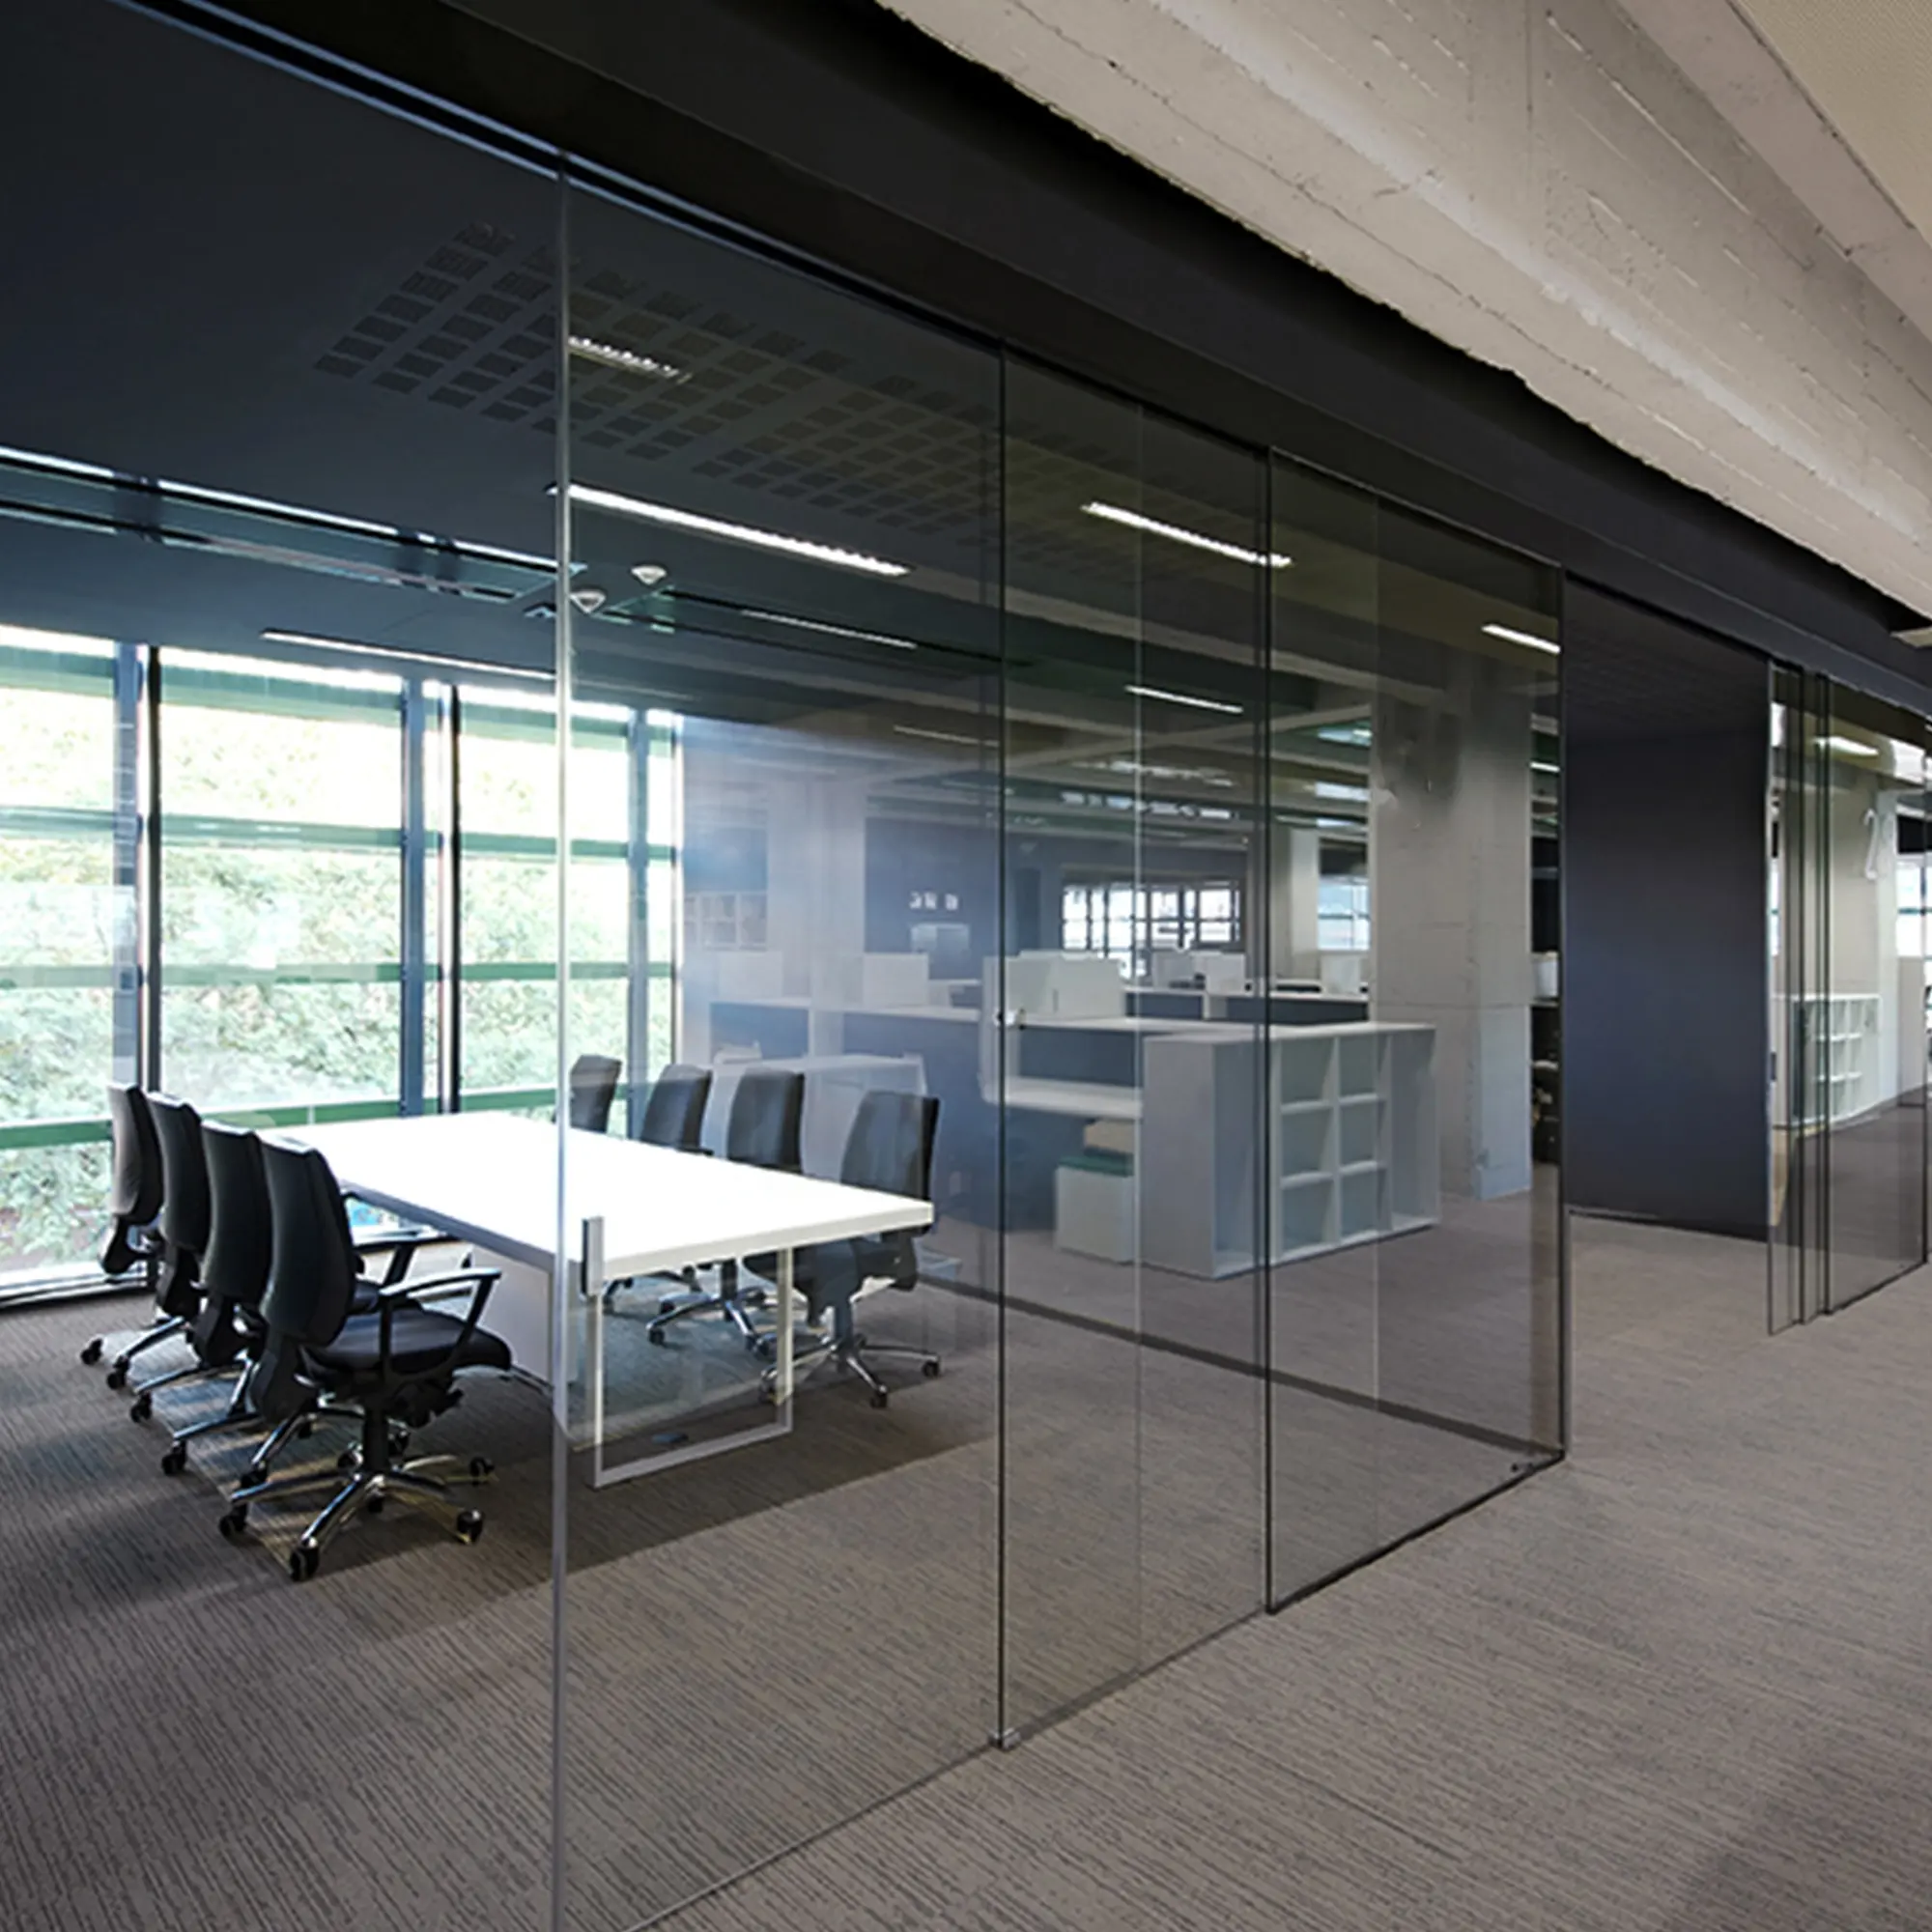 Ofis toplantı odası 10-12mm çerçevesiz cam 3 metre gümüş alüminyum profil 4 paneller teleskopik hidrolik sürgülü kapı